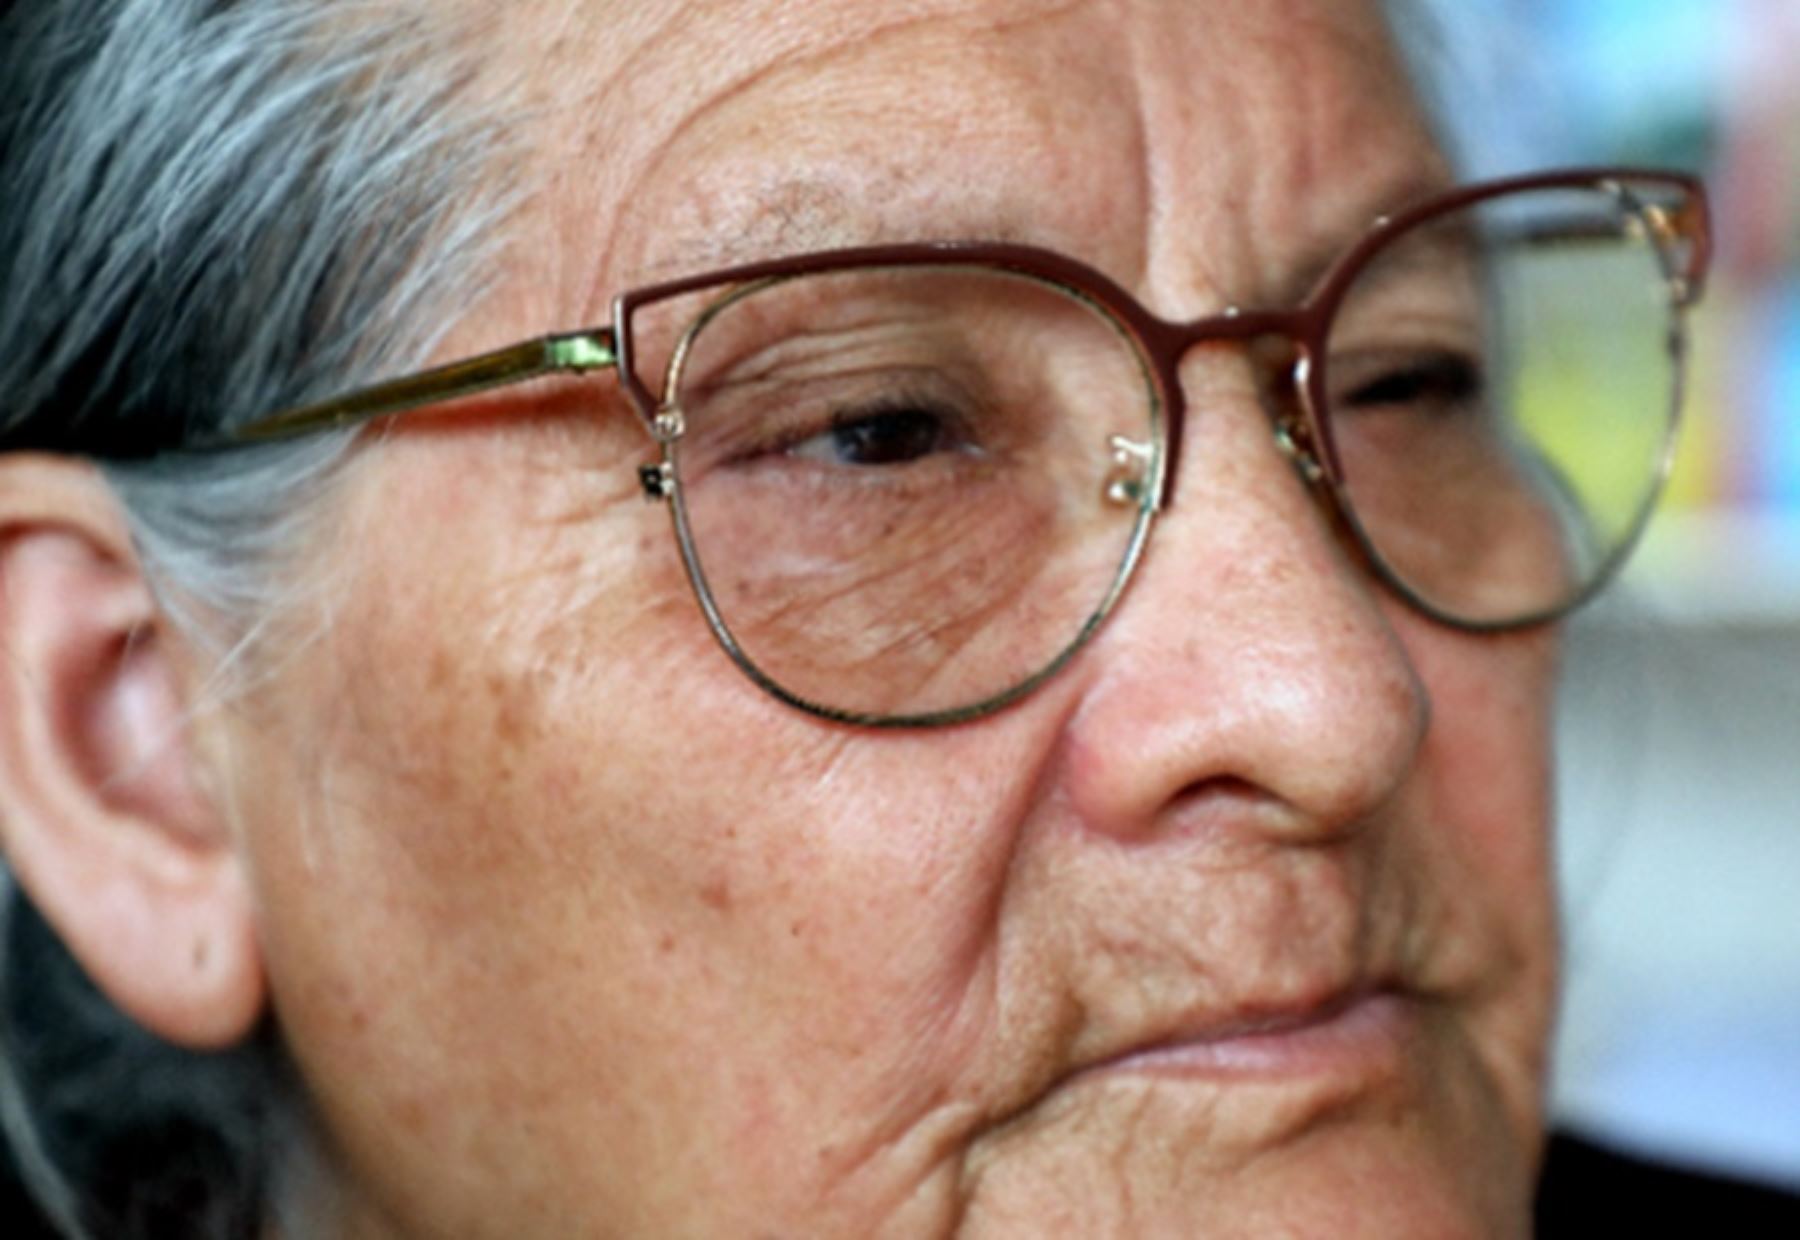 A sus 74 años, María Gutiérrez Galarreta, usuaria del programa Pensión 65, pudo retomar sus actividades cotidianas, luego de operarse de unas terribles cataratas que la apartaron drásticamente de su rutina y le provocaron una gran depresión.